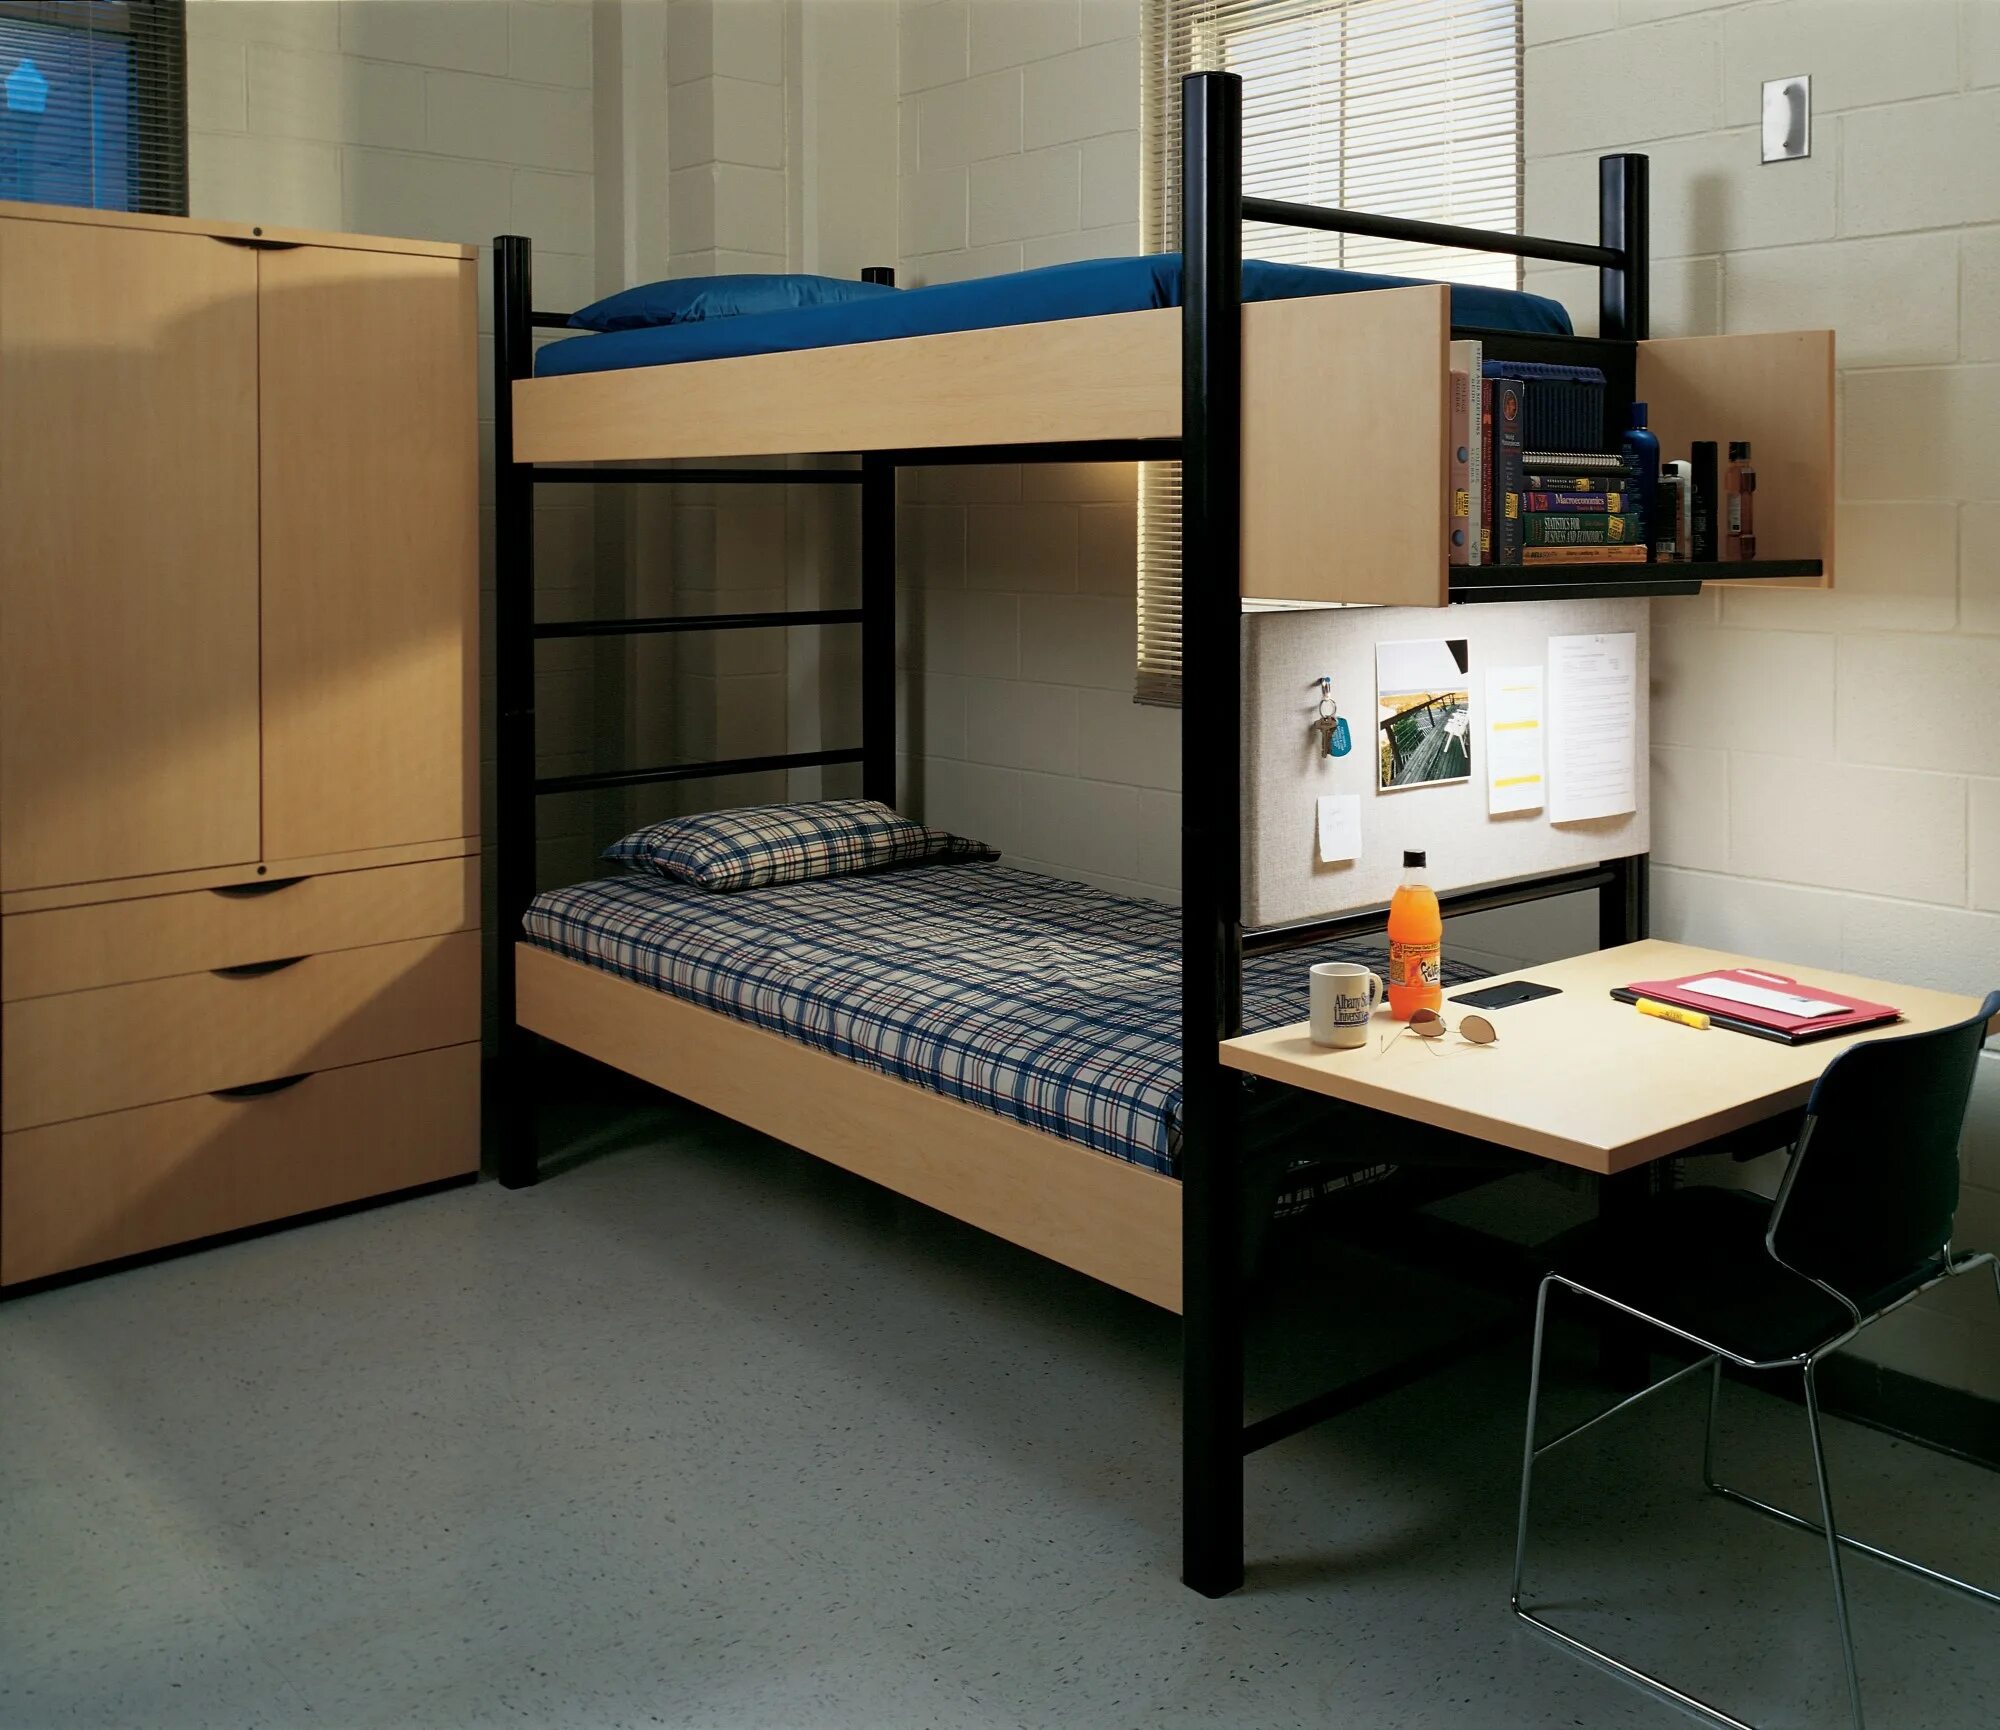 Разрешено ли использование двухъярусных кроватей ответ. Двухэтажная кровать в общаге. Кровать двухъярусная для общежития. Двухъярусная кровать для студентов. Двухуровневая кровать в общагу.